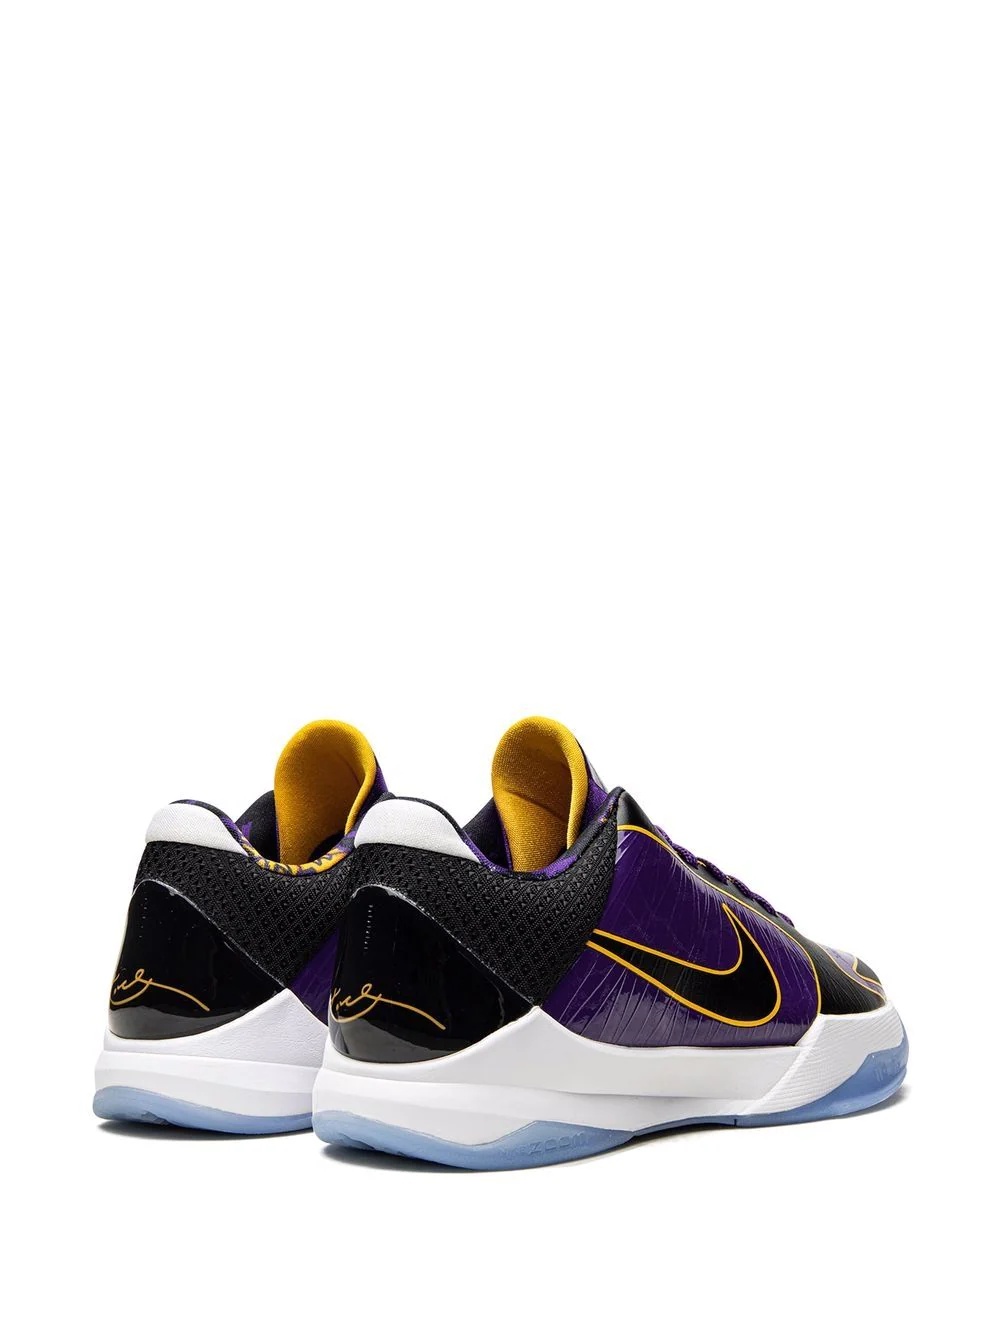 Kobe 5 Protro â5x Champ/Lakersâ sneakers - 3